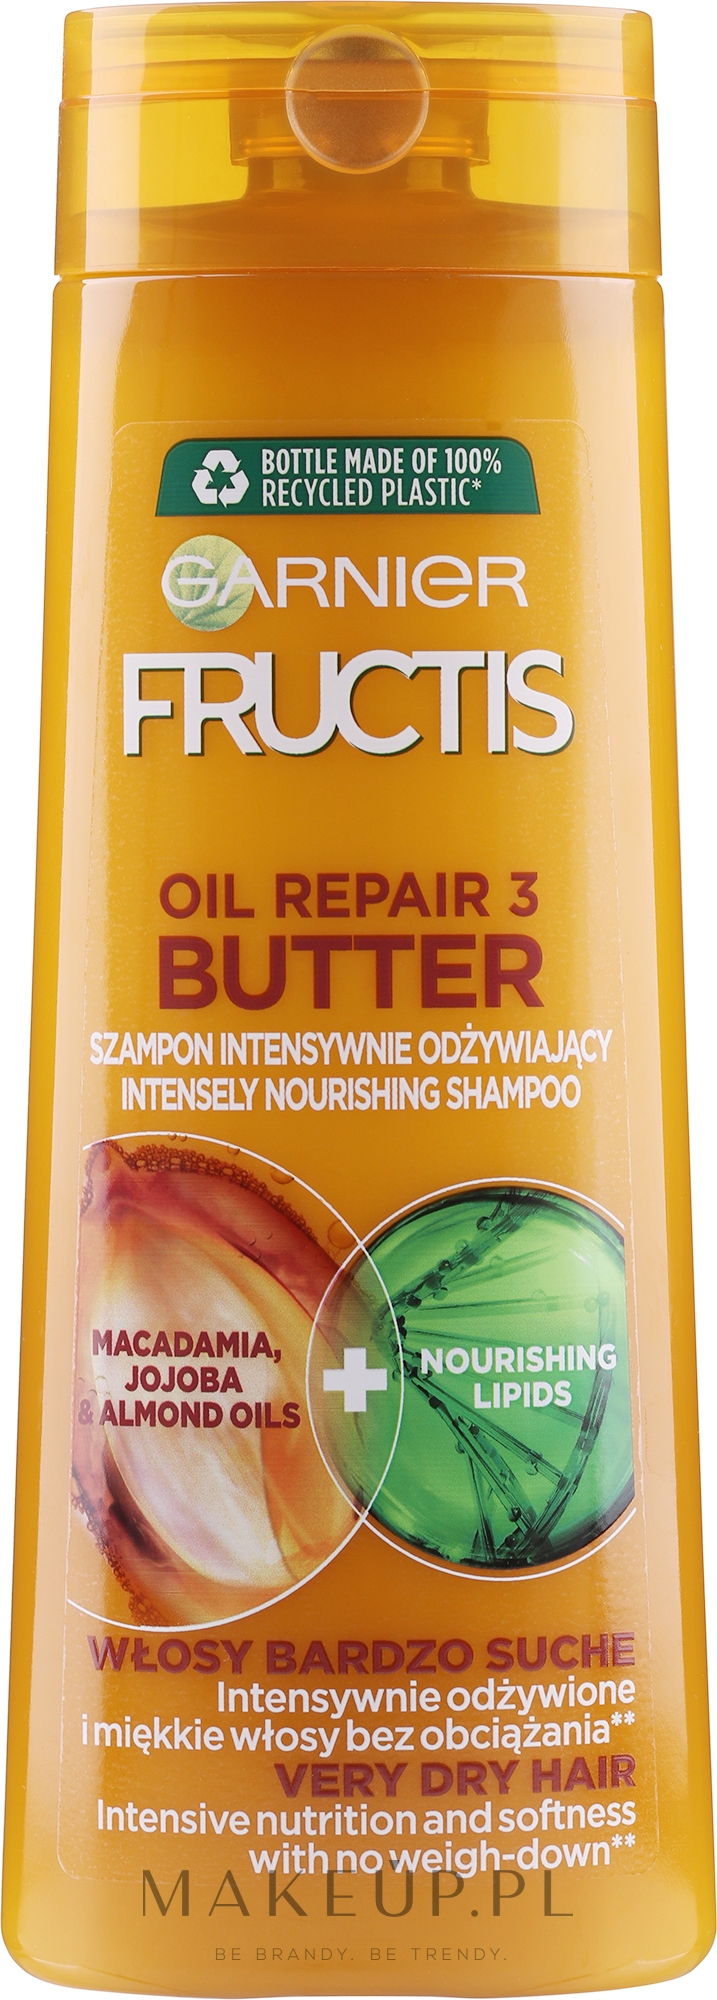 szampon fructis do włosów suchych